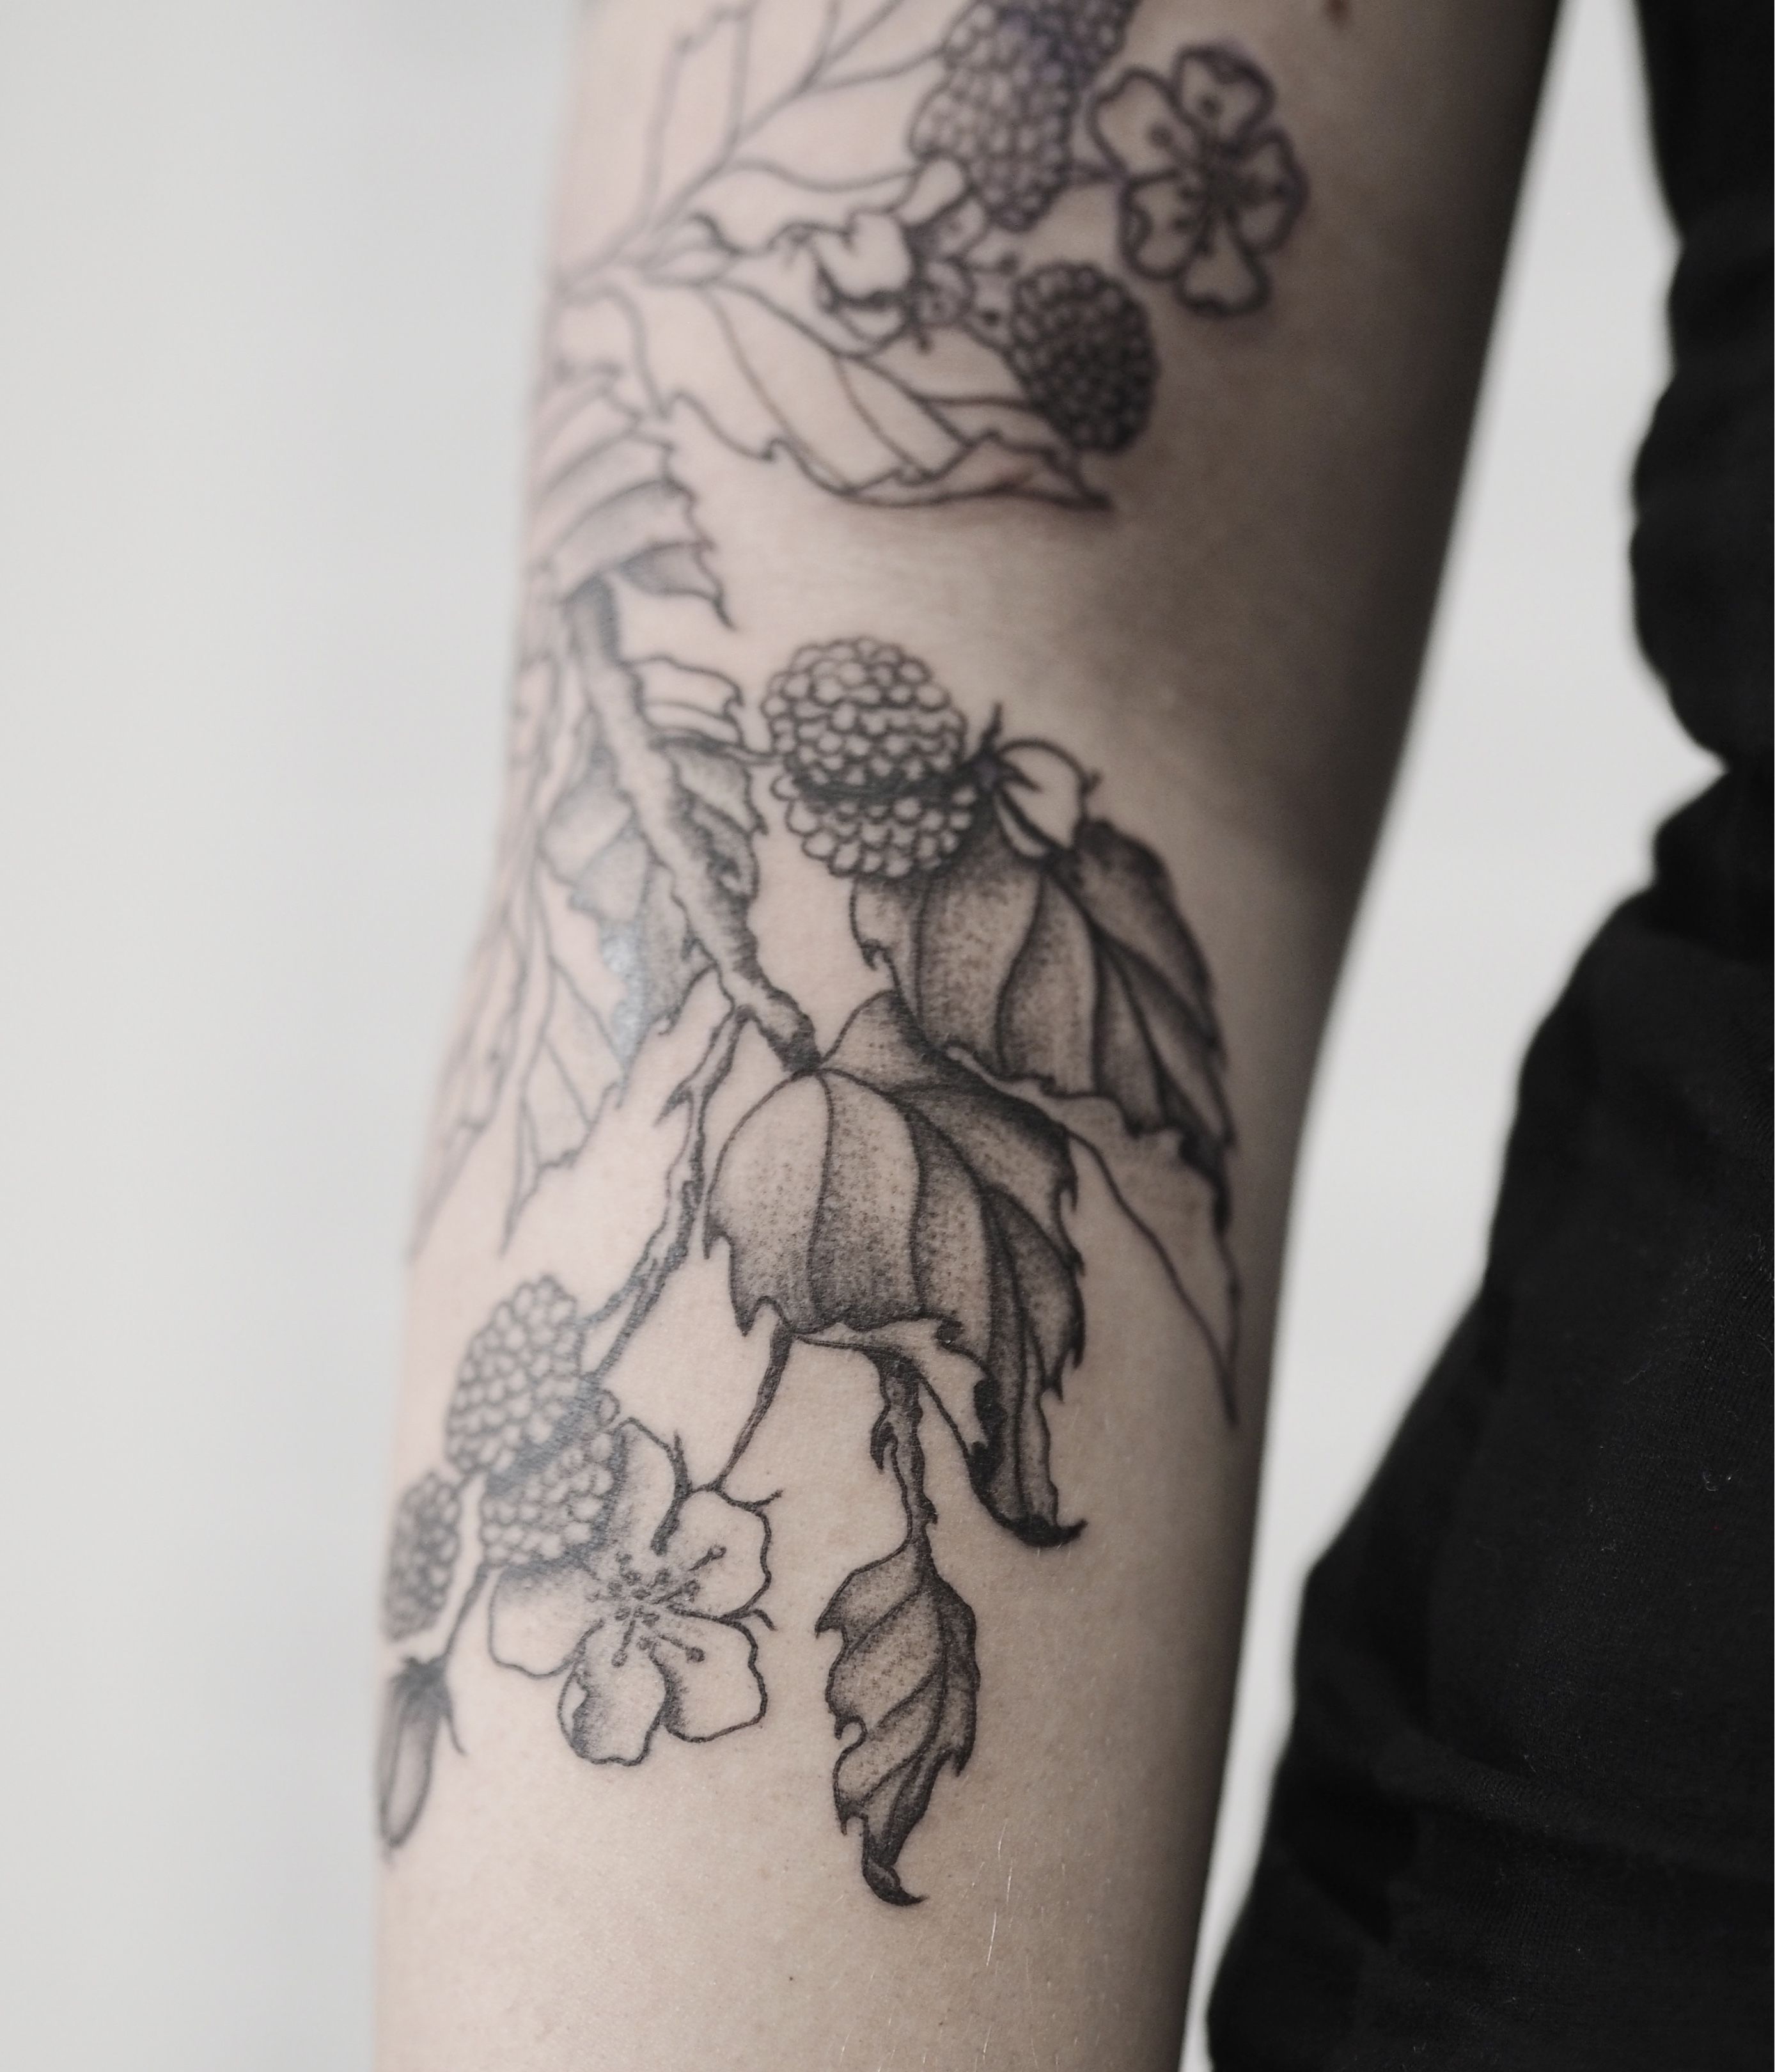 Tattoo uploaded by KTREW Tattoo  Botanical Brambles Blackberries Tattoo by  Kirstie Trew  KTREW Tattoo studio  Birmingham UK  botanicaltattoo  bramblestattoo blackberriestattoo blackworktattoo tattoo  Tattoodo